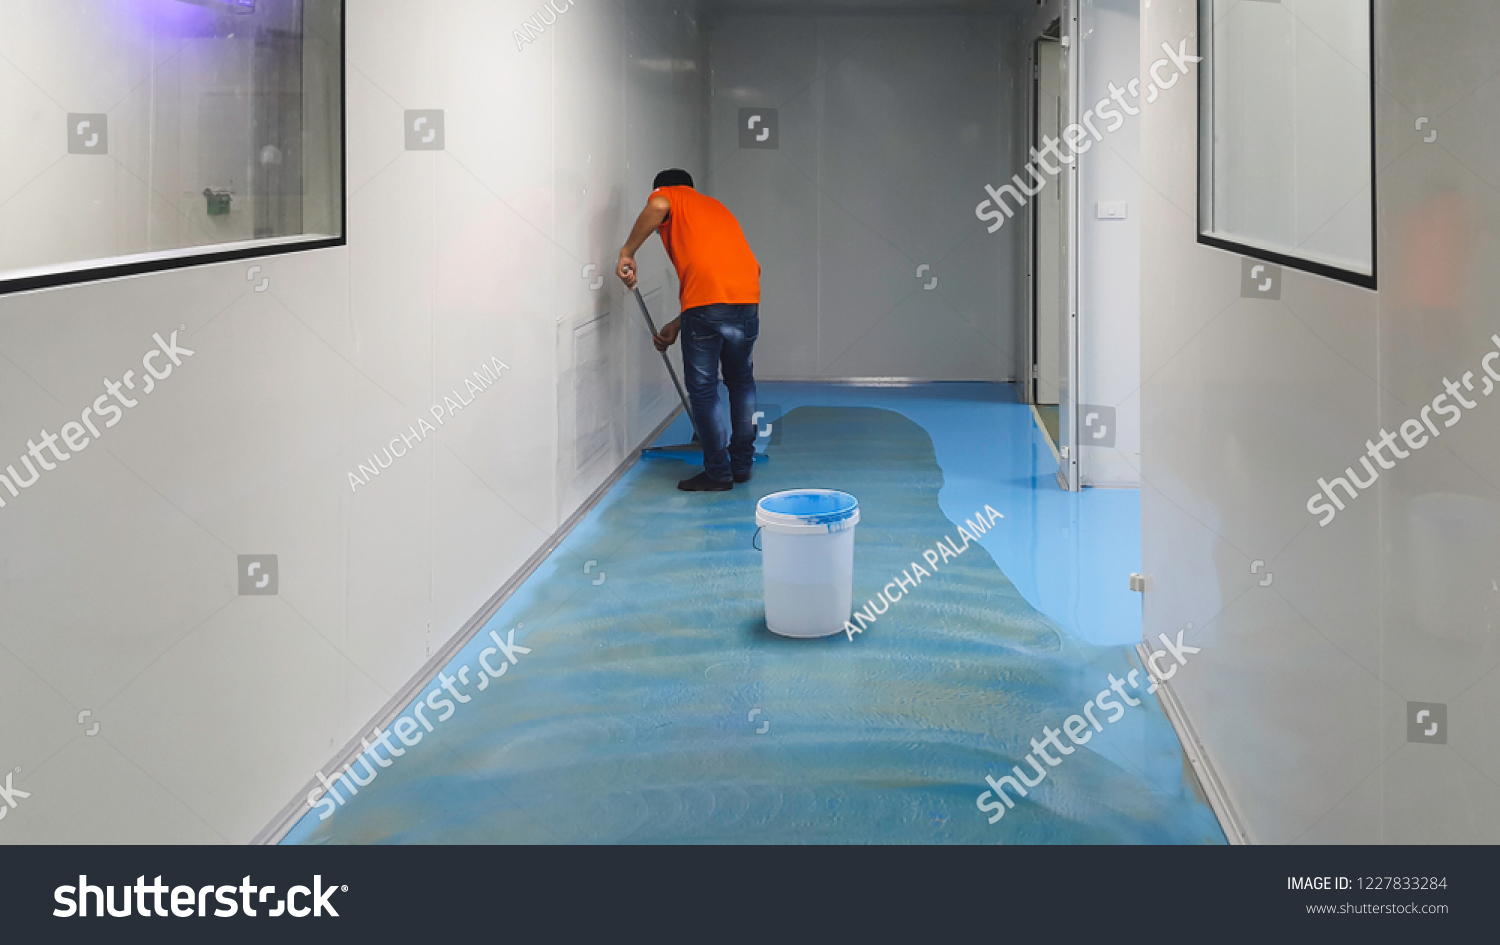 Epoxy Flooring Clean Room Stock Photo Edit Now 1227833284